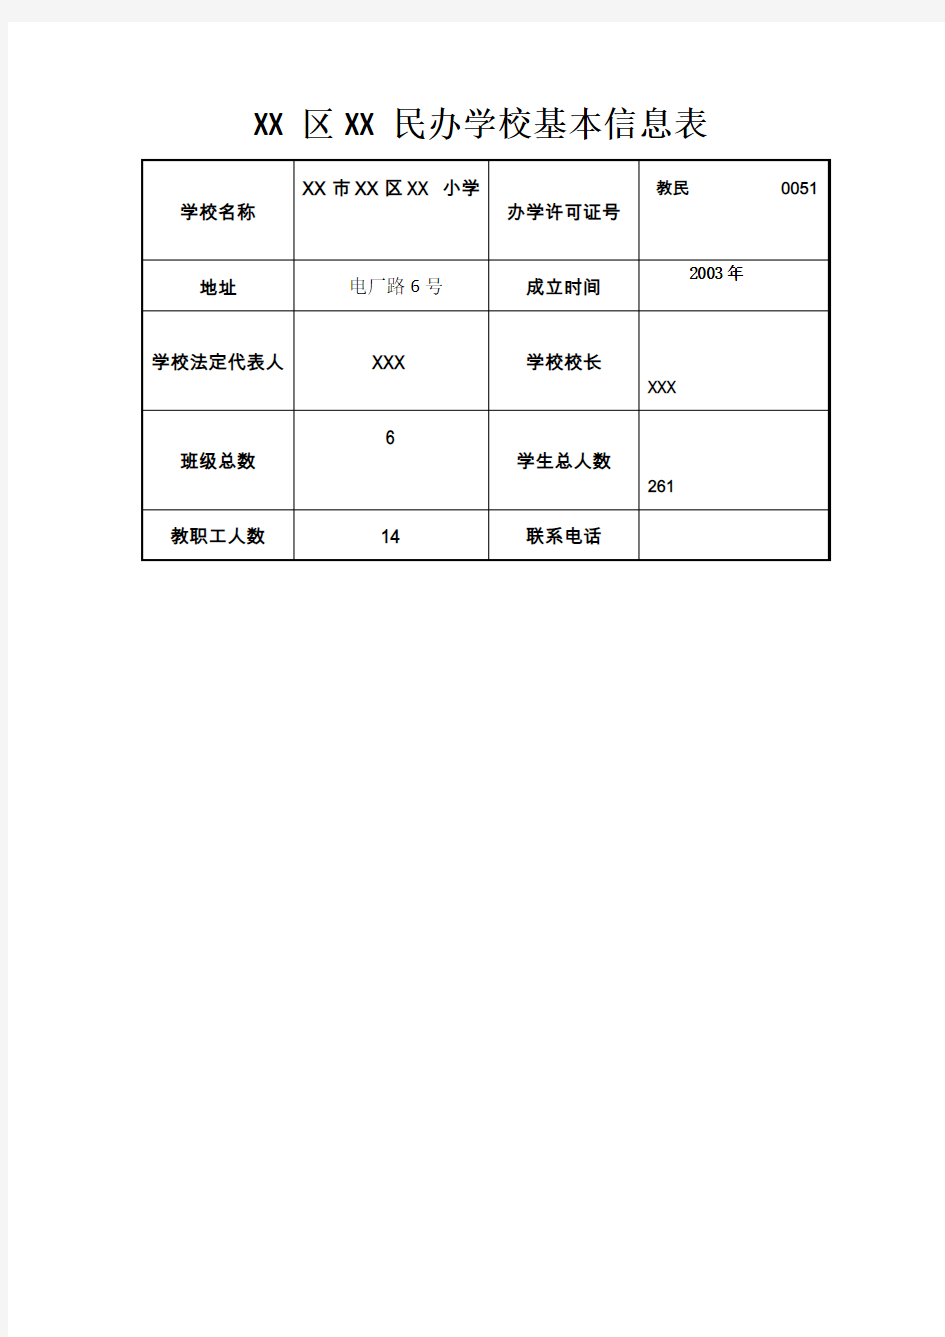 XX民办学校基本信息表【模板】